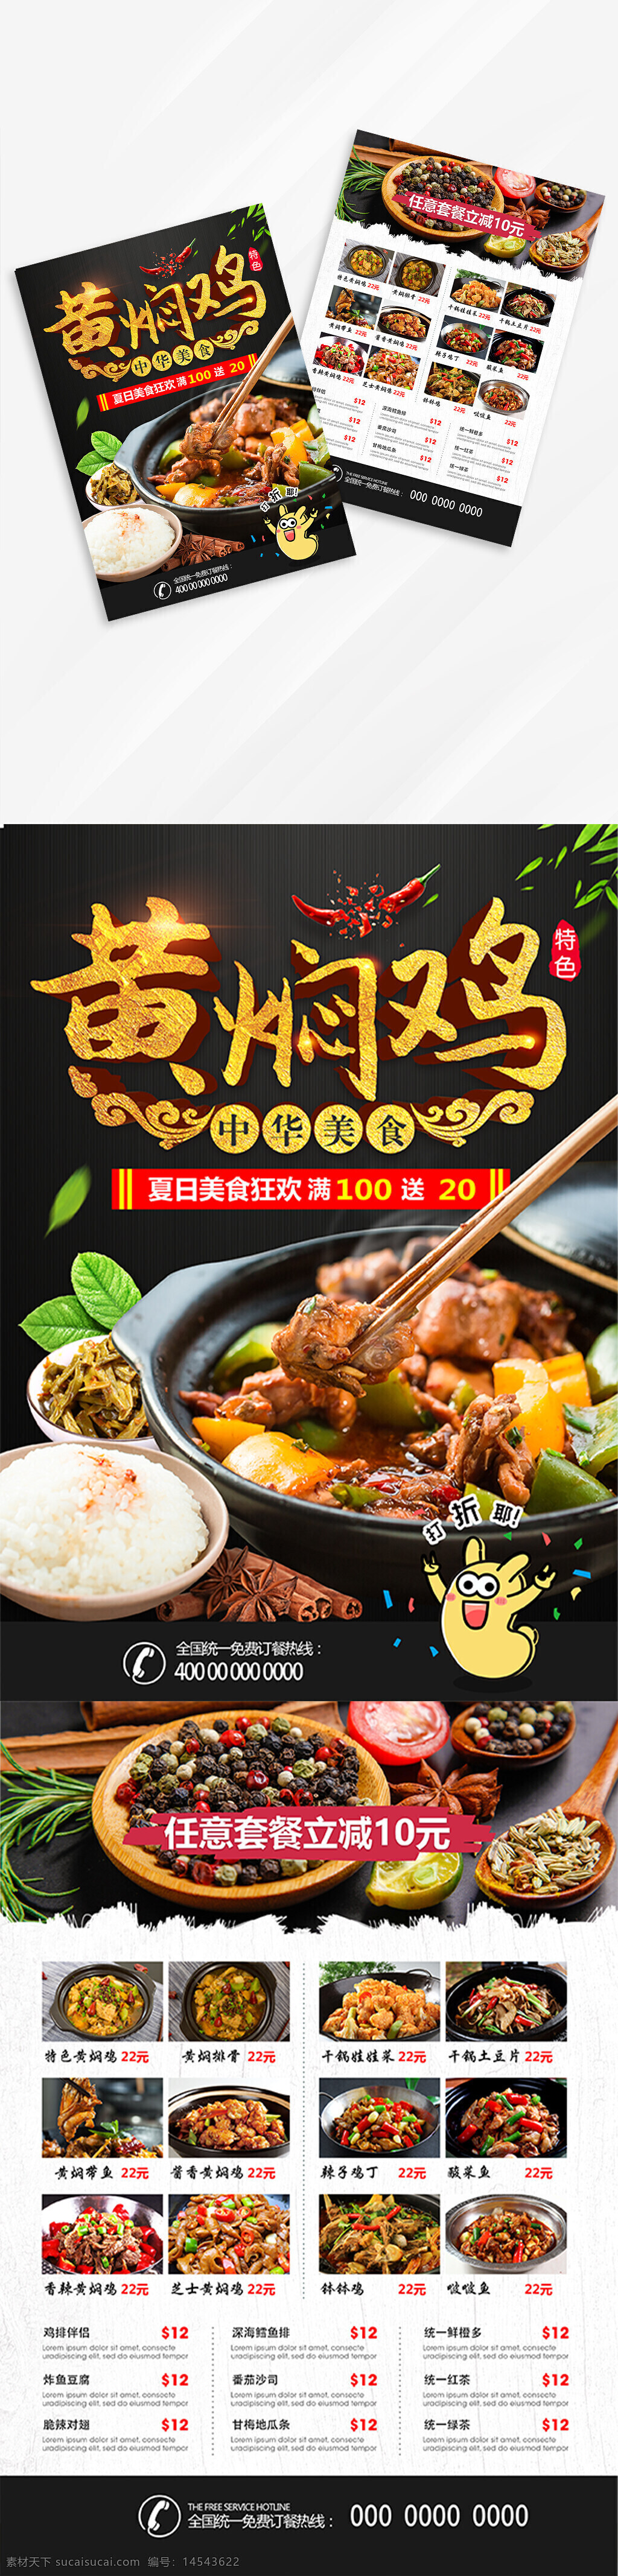 黄焖鸡 饭店 美食 肉食 鸡肉 菜单 菜谱 宣传单